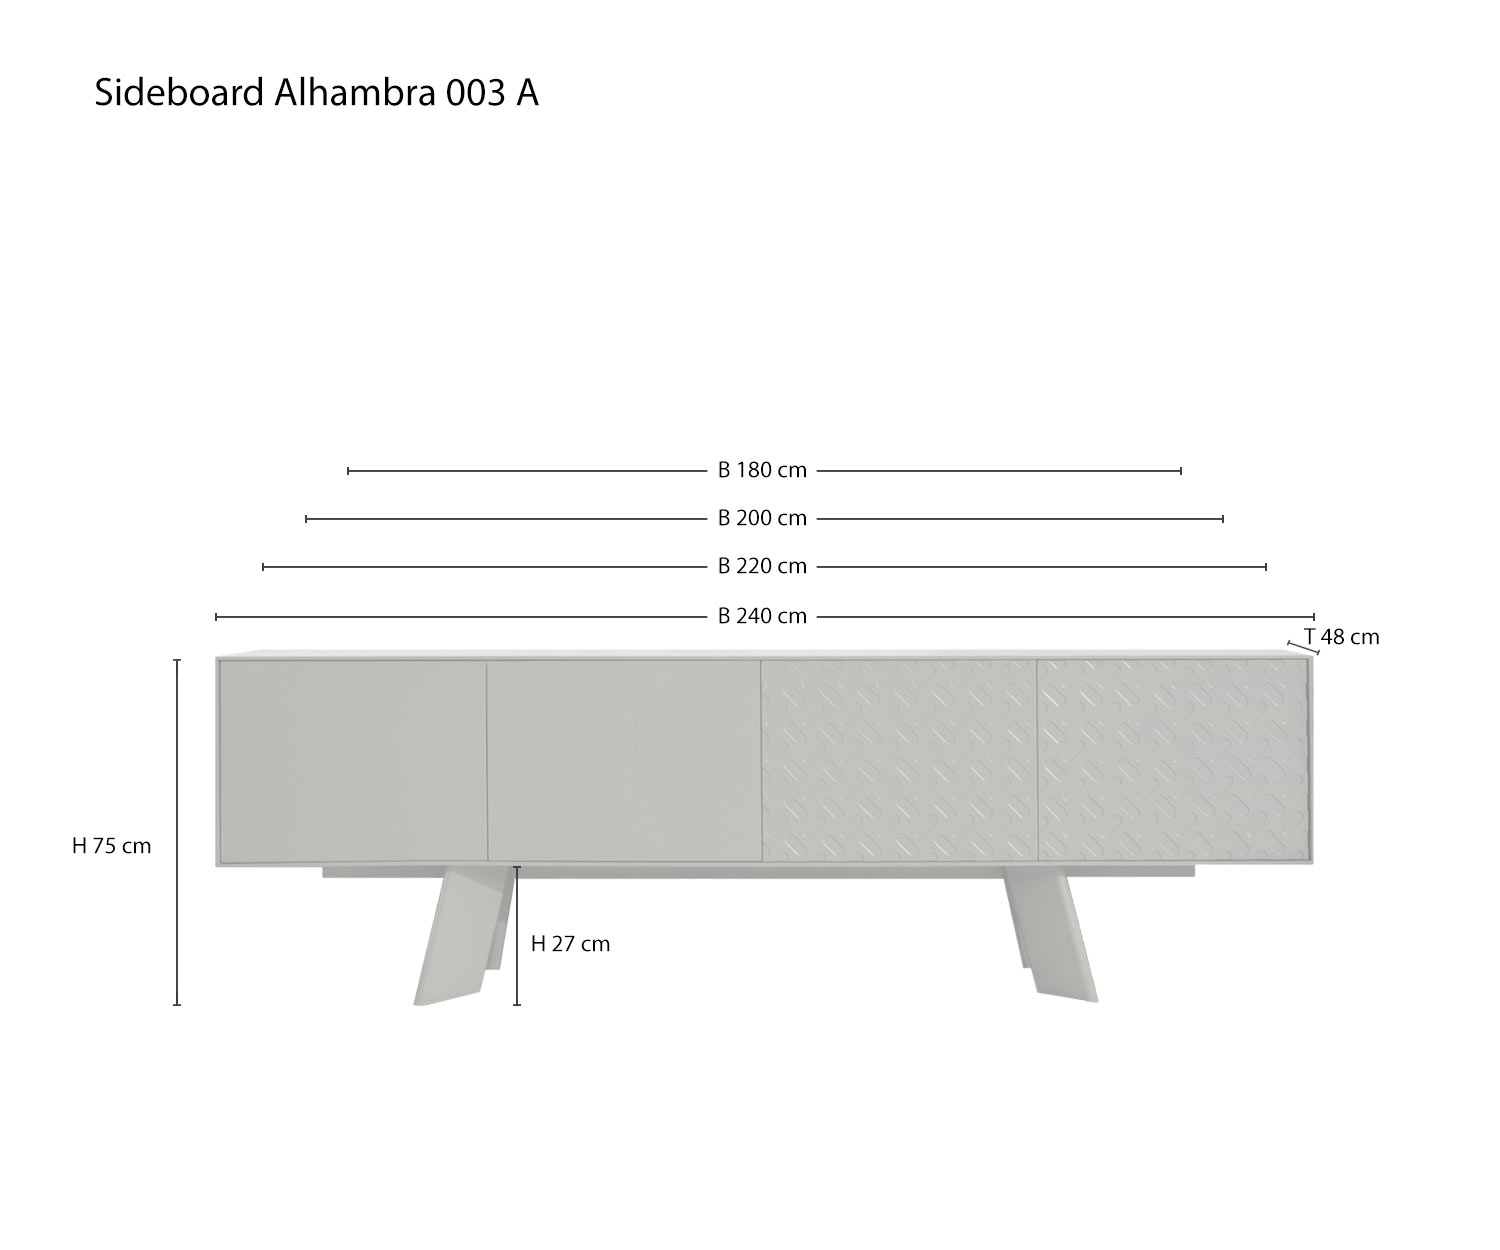 Schizzo Dimensioni Dimensioni Varianti di al2 Credenza di design Alhambra 003